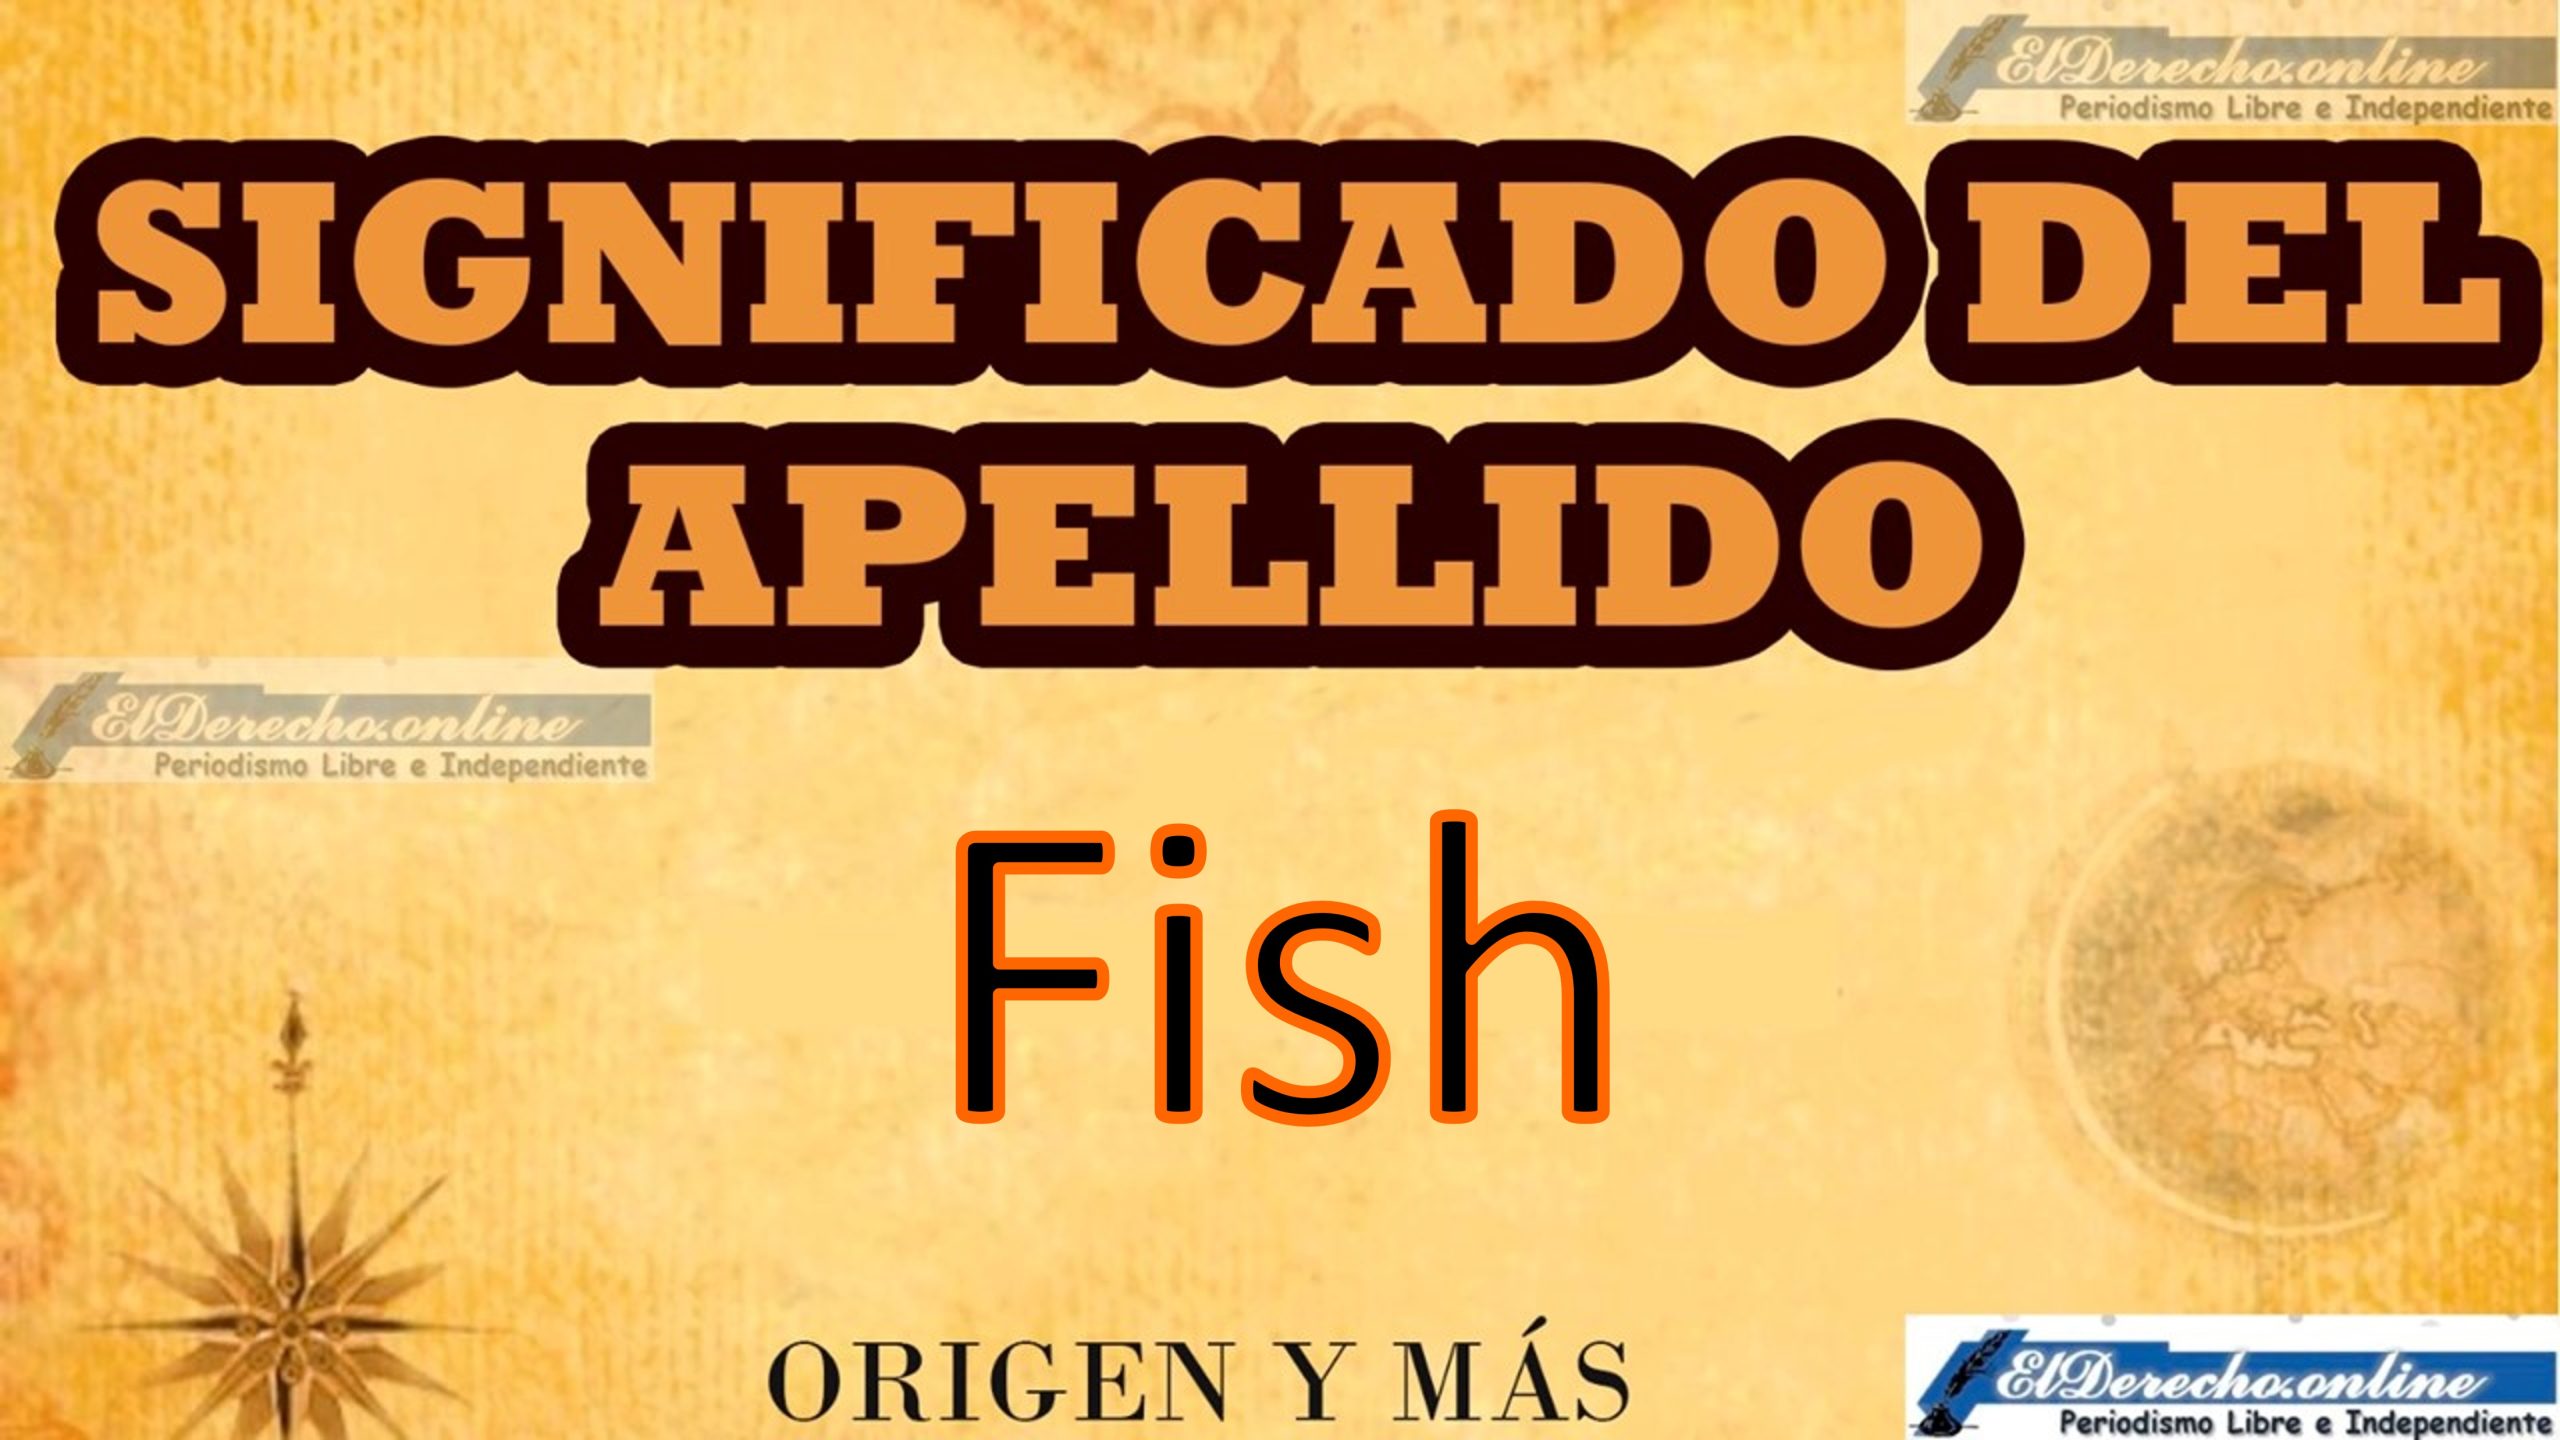 Significado del apellido Fish, Origen y más